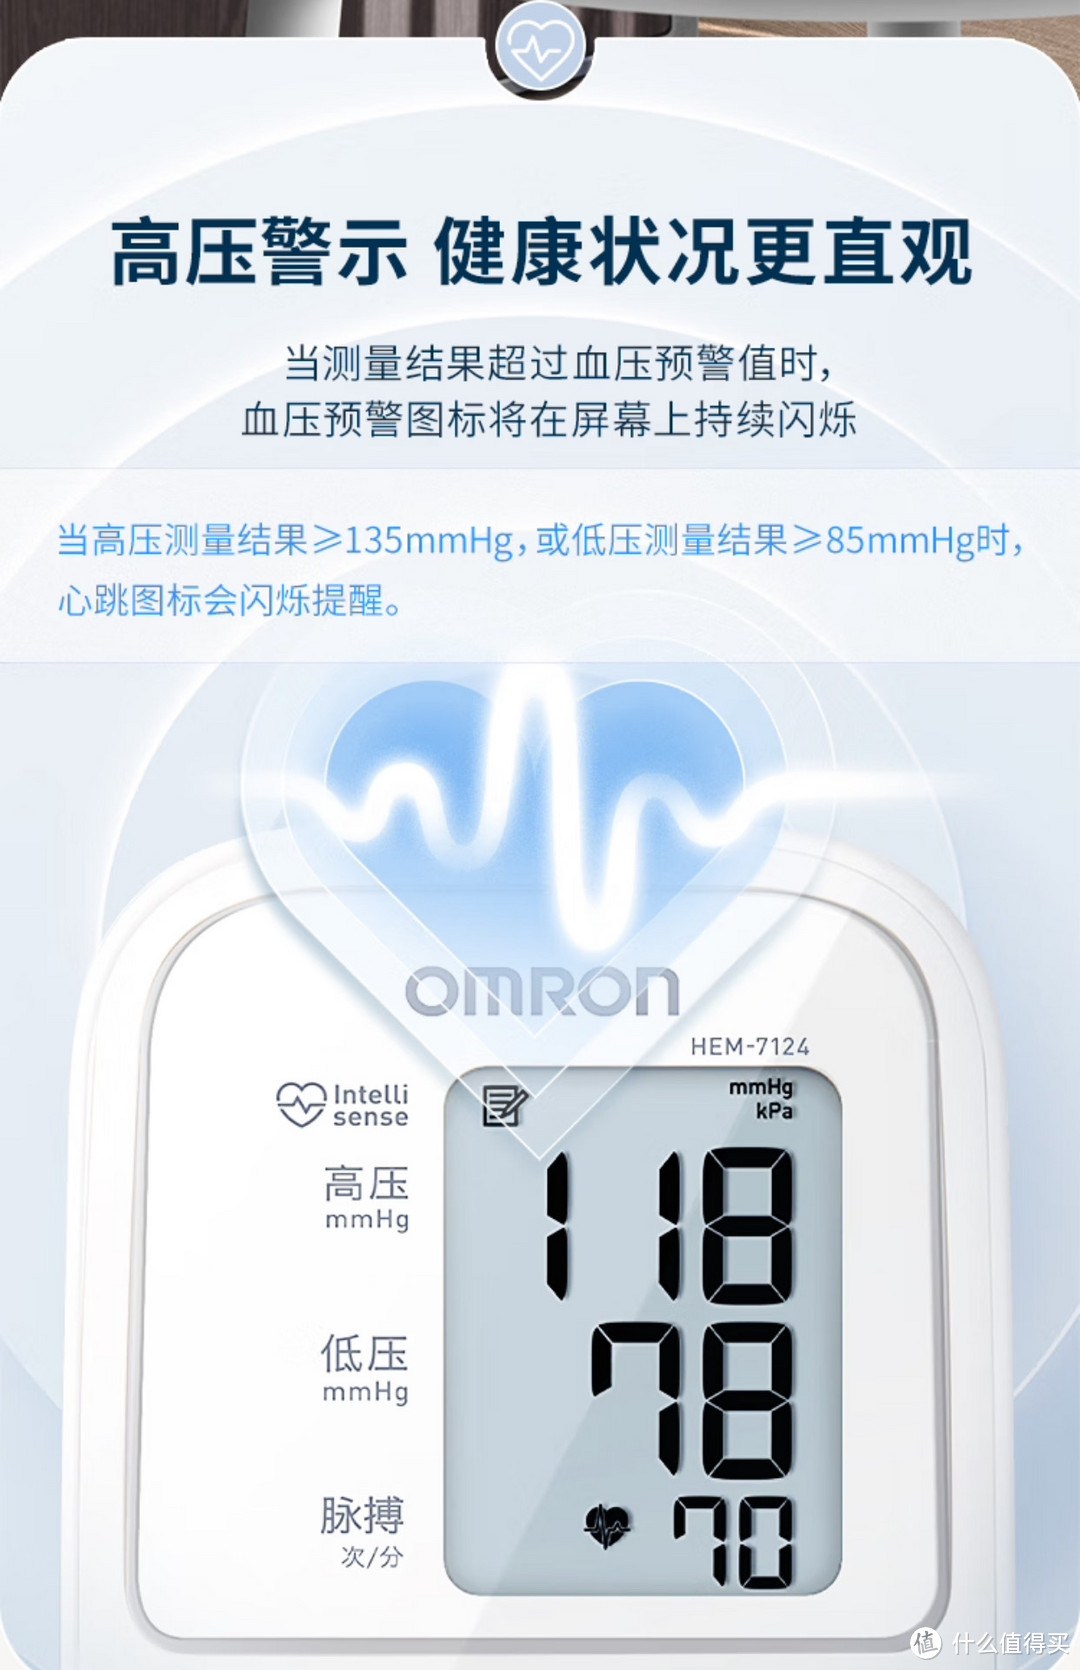 欧姆龙血压计是监测高血压人群的必备医疗器械，值得购买，价格划算。